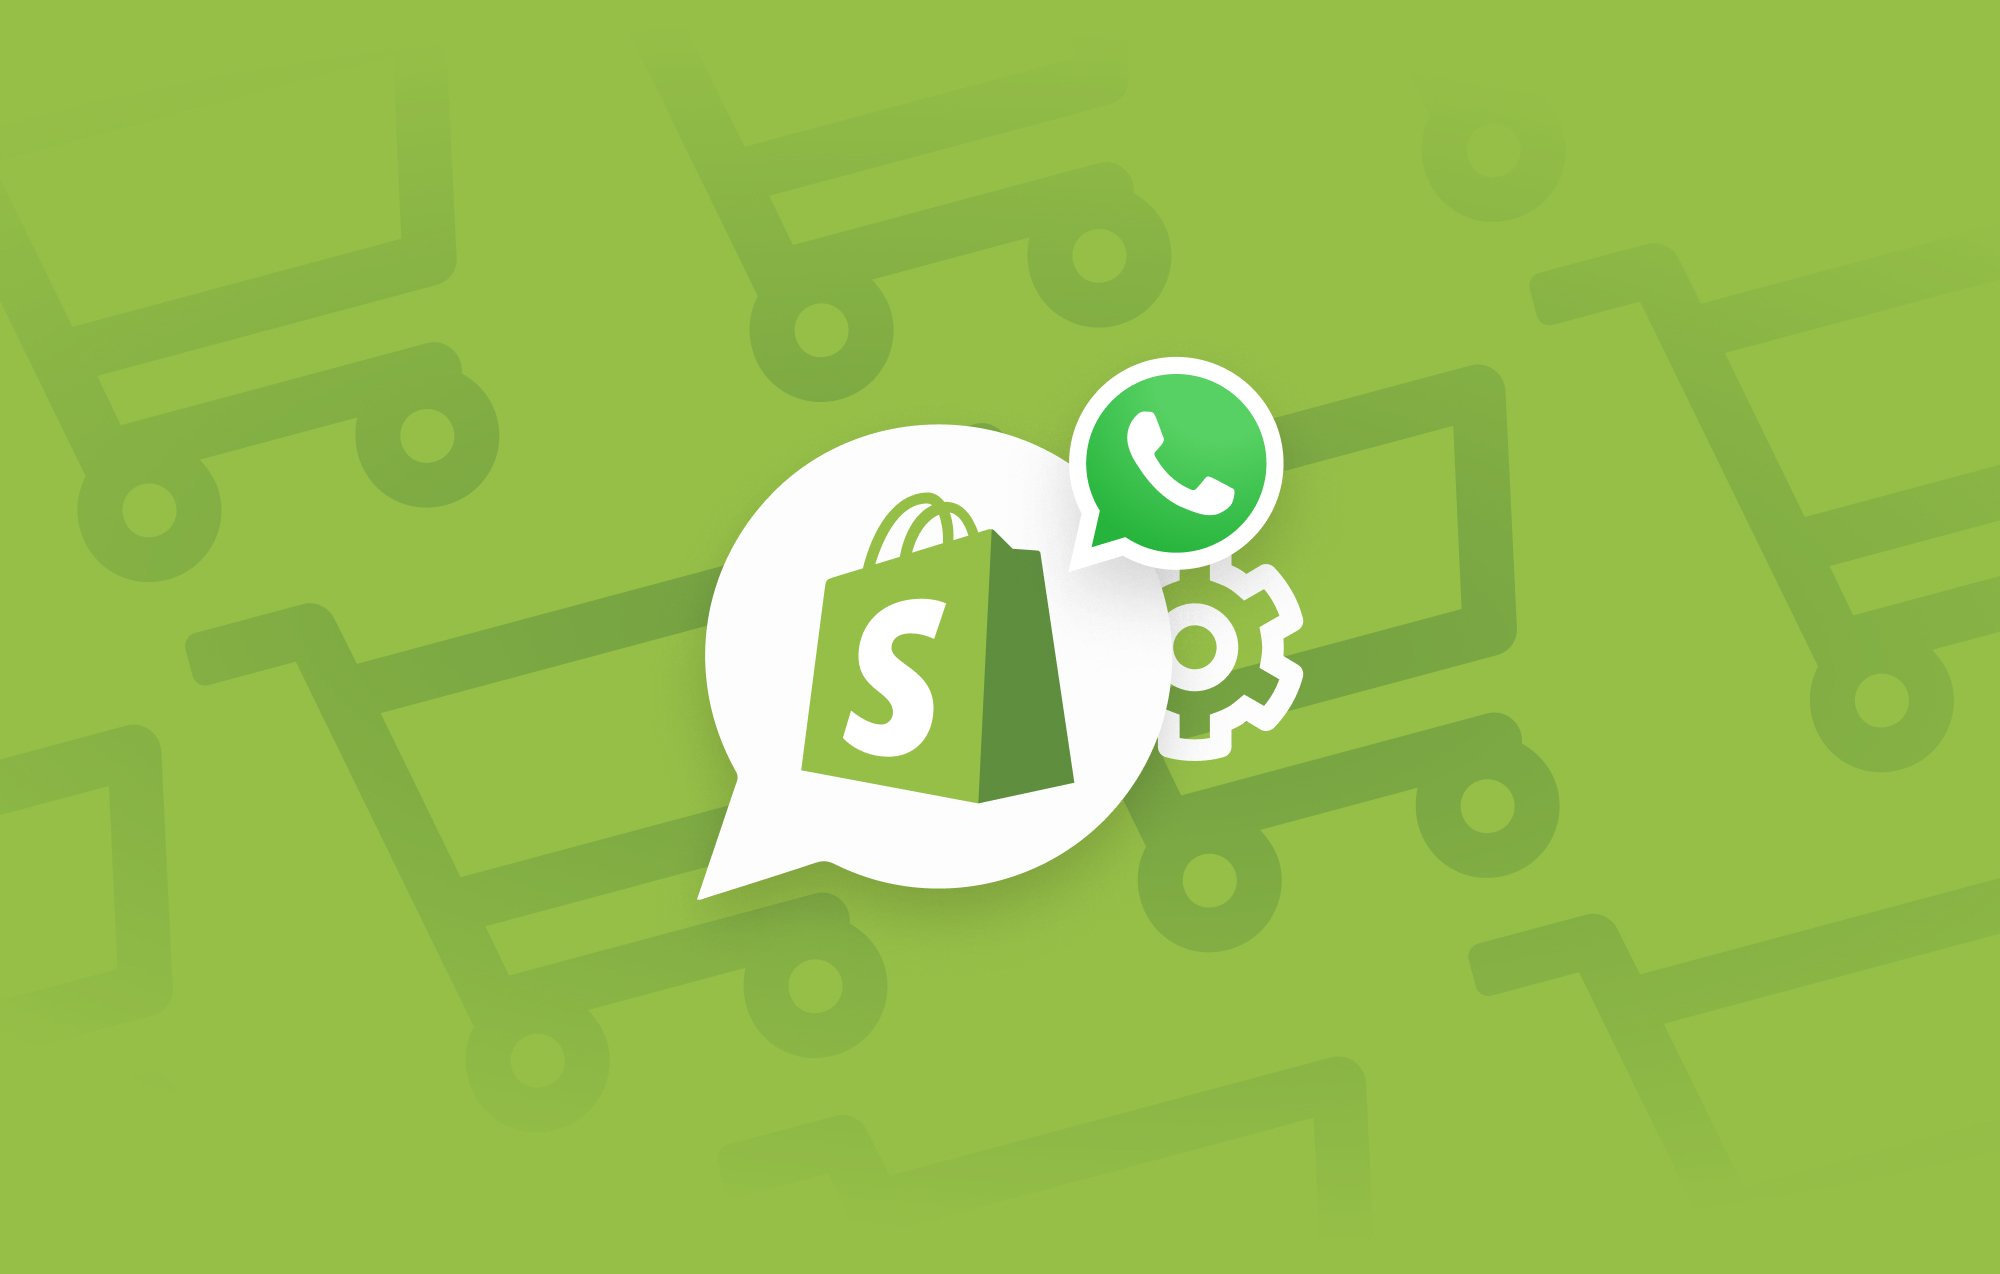 L'integrazione di Shopify con WhatsApp: è arrivata e ne hai bisogno.